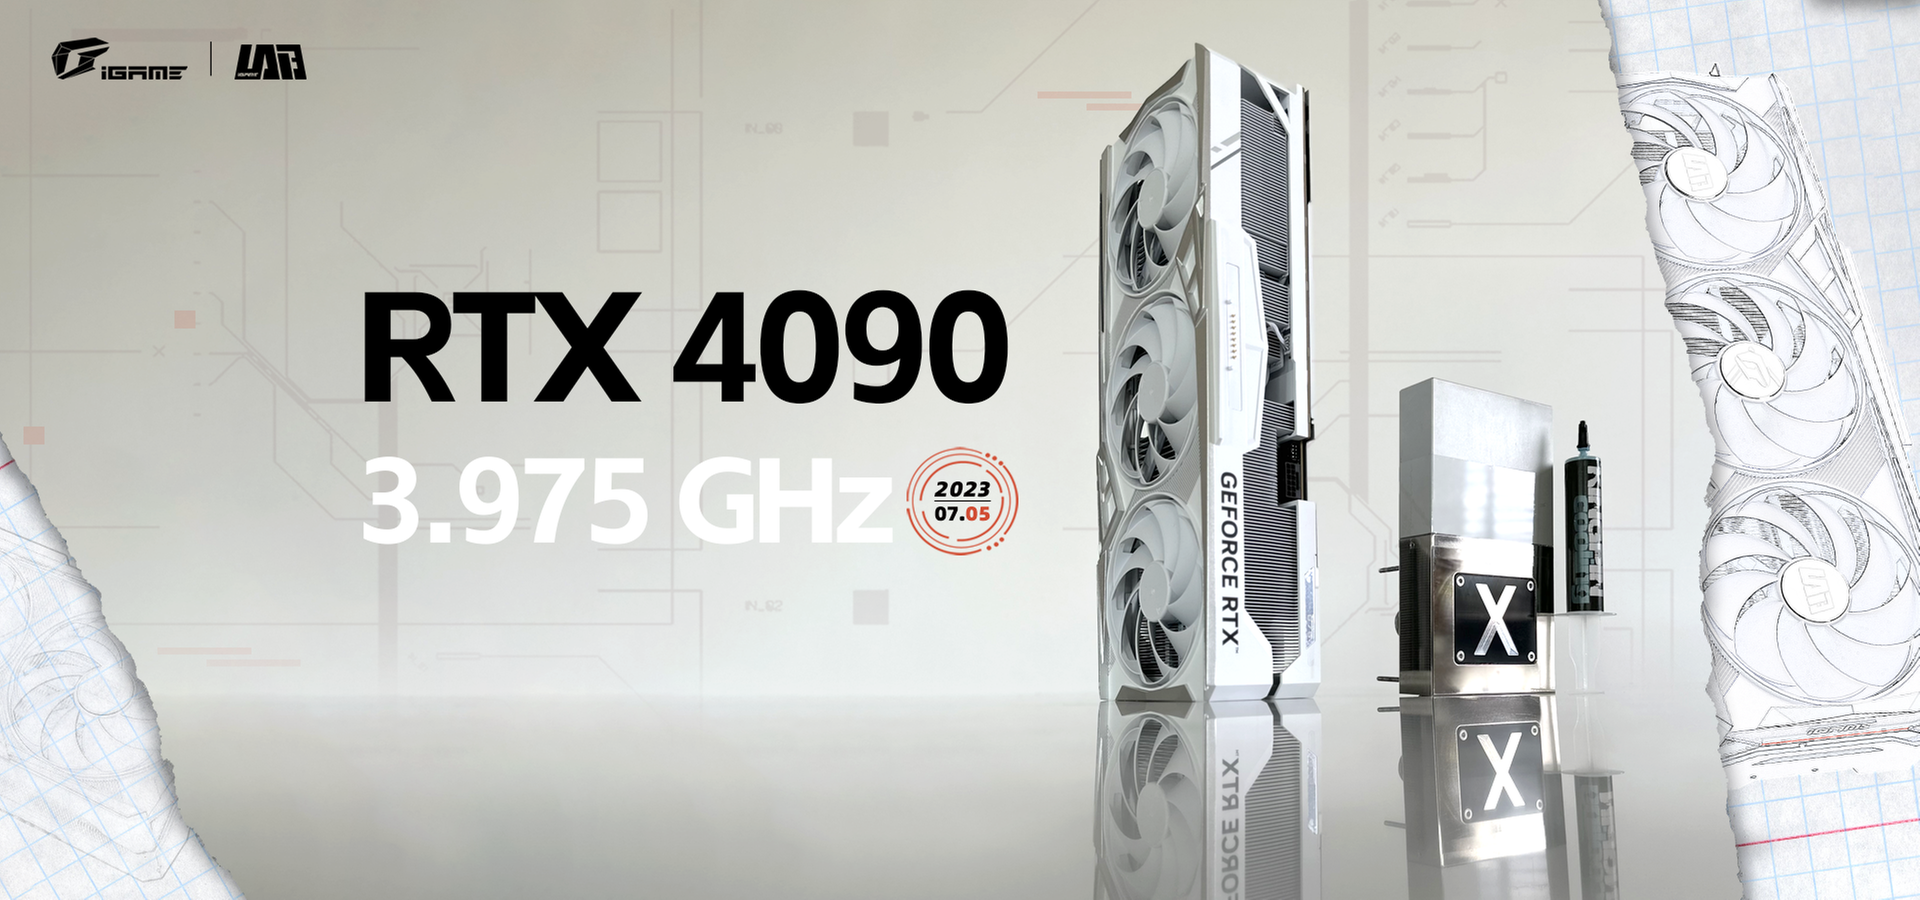 NVIDIA GeForce RTX 4090 z kolejnym rekordem świata